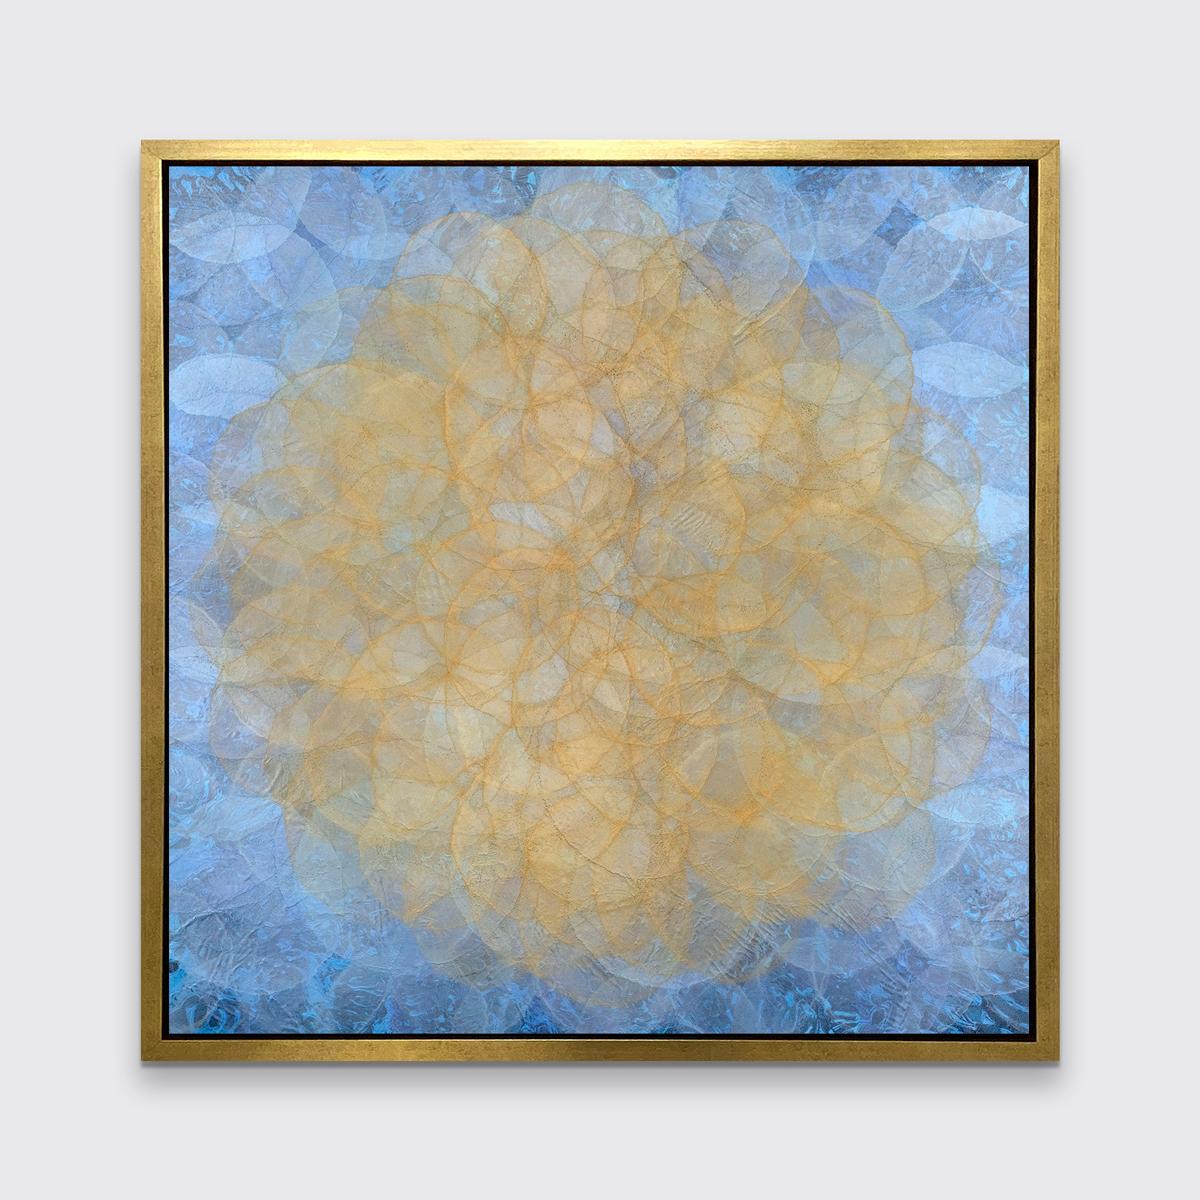 Cette impression abstraite géométrique en édition limitée de Roger Mudre présente des cercles concentriques légèrement translucides qui se chevauchent dans toute la composition, créant un effet lumineux d'un cercle jaune-or au centre, entouré d'un